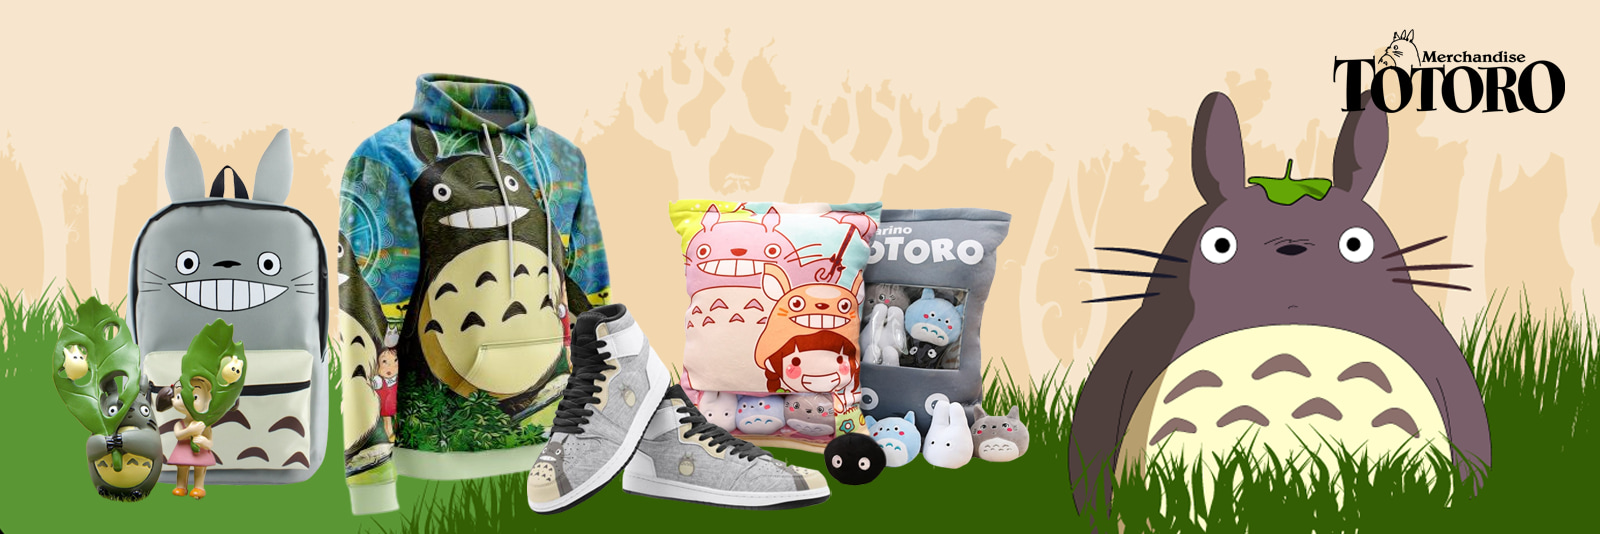 Totoro Merchandise Banner